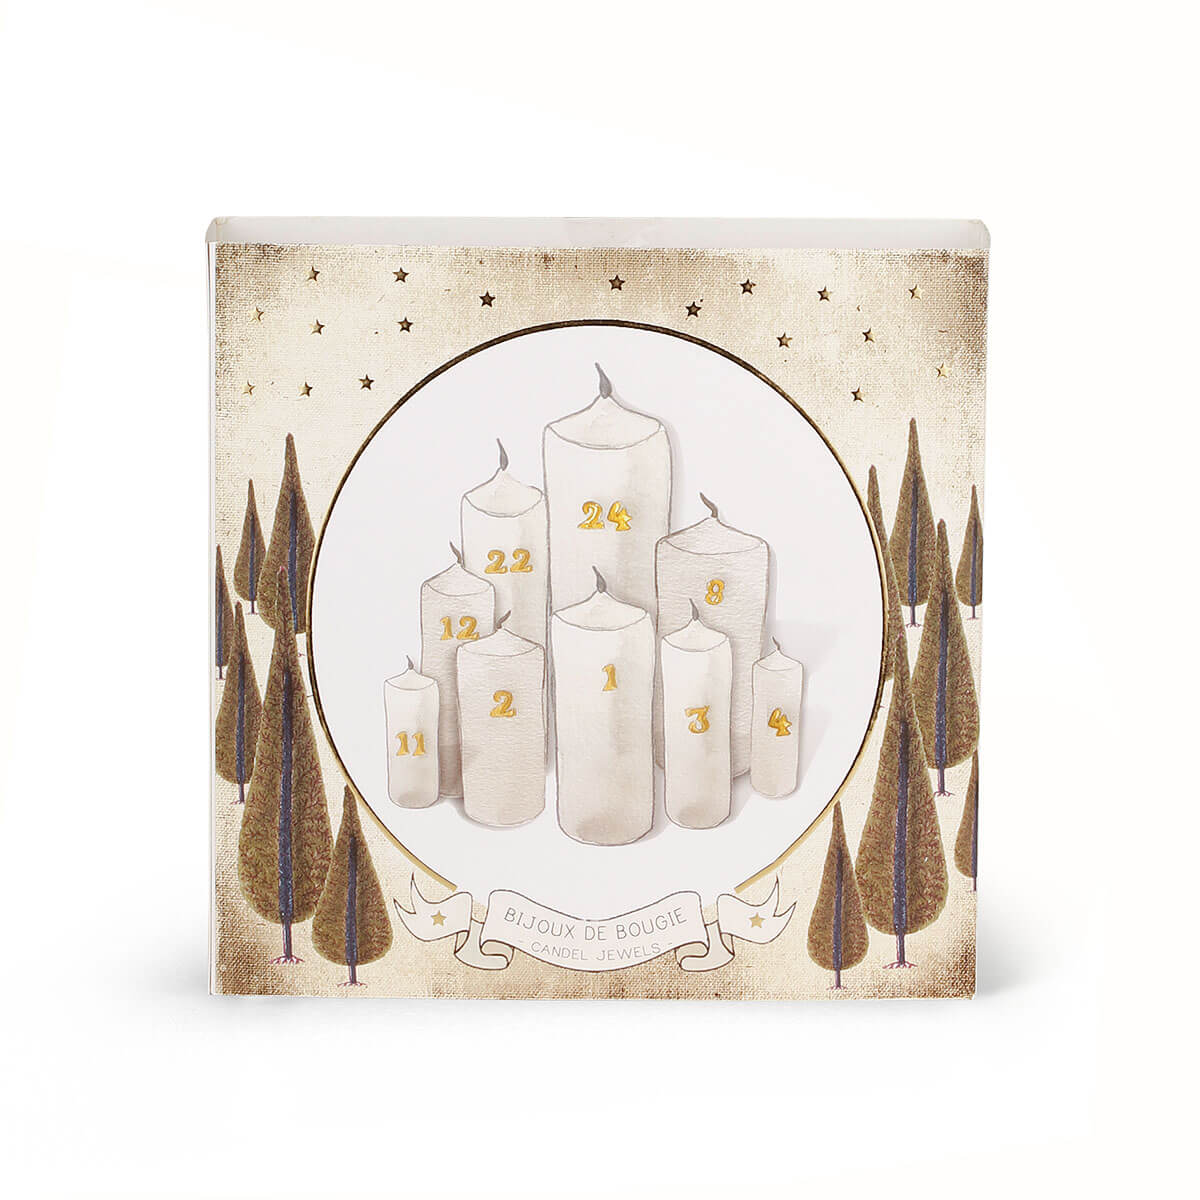 Kerzenschmuck –  Bijou de bougie Advent